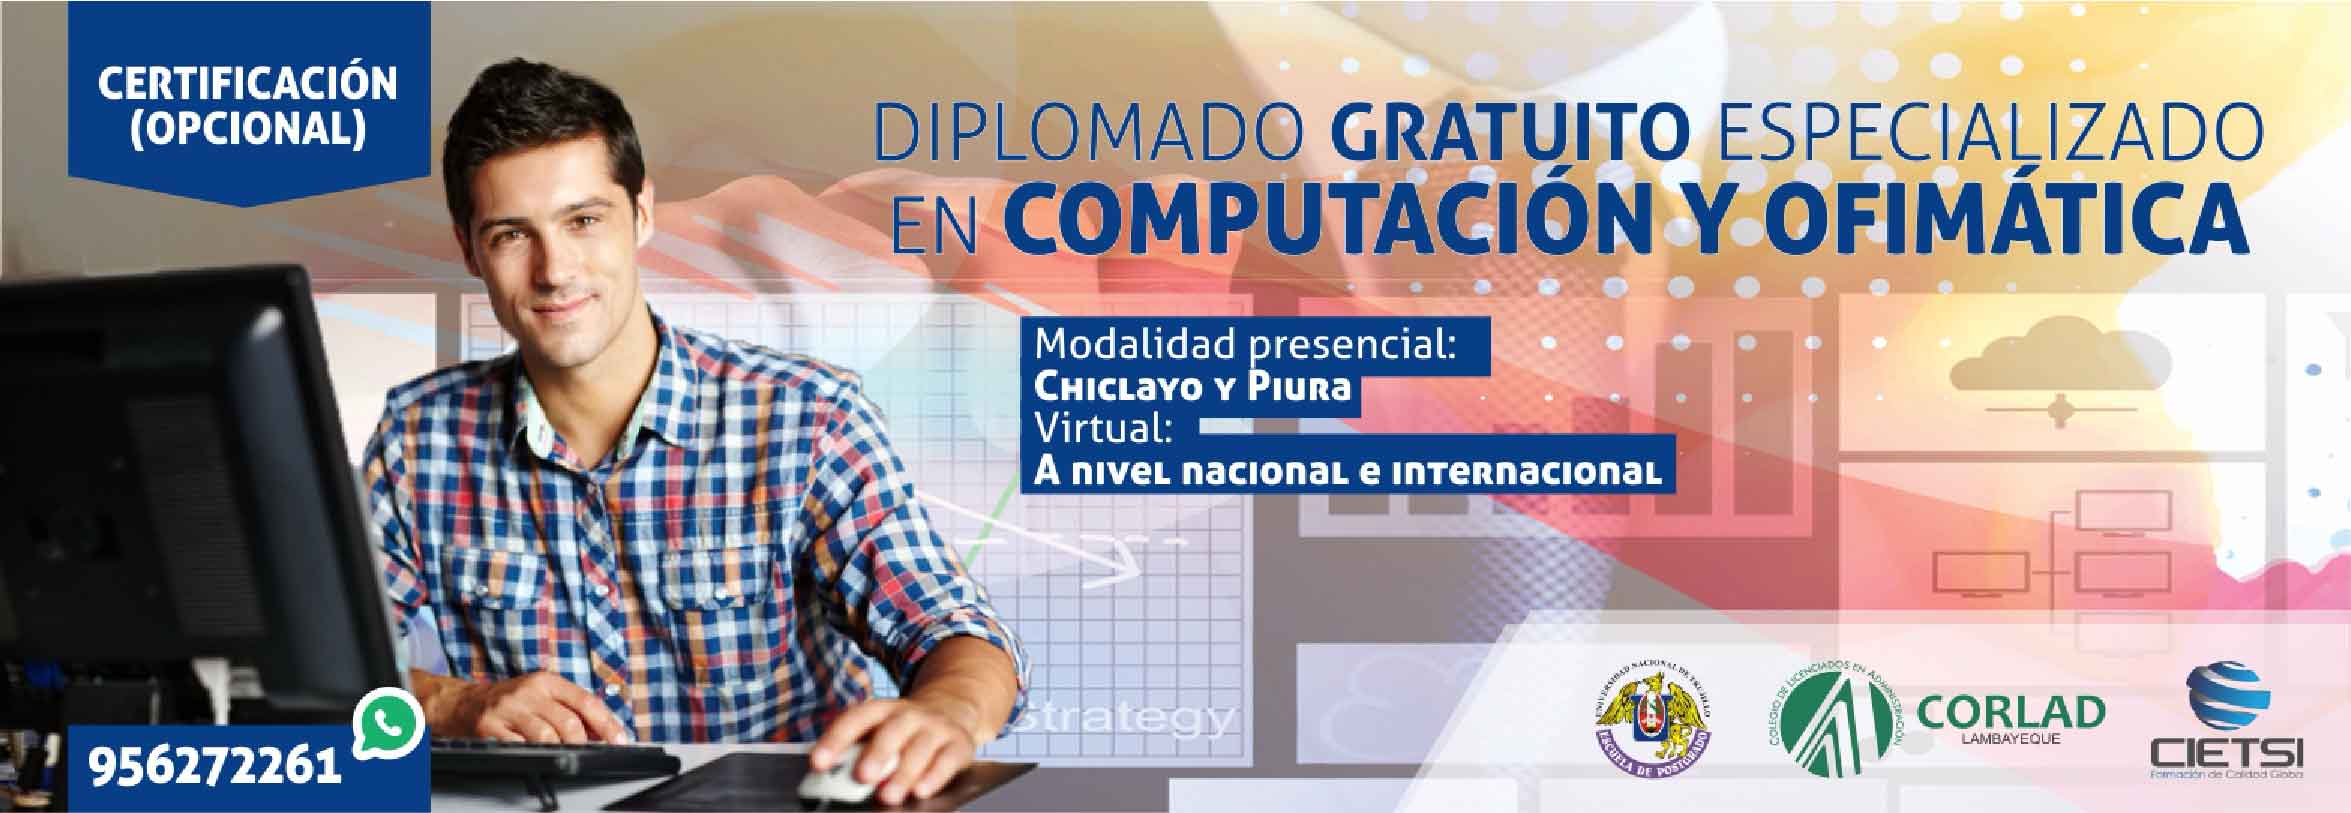 diplomado de especializaciOn en computaciOn y ofimAtica 2018